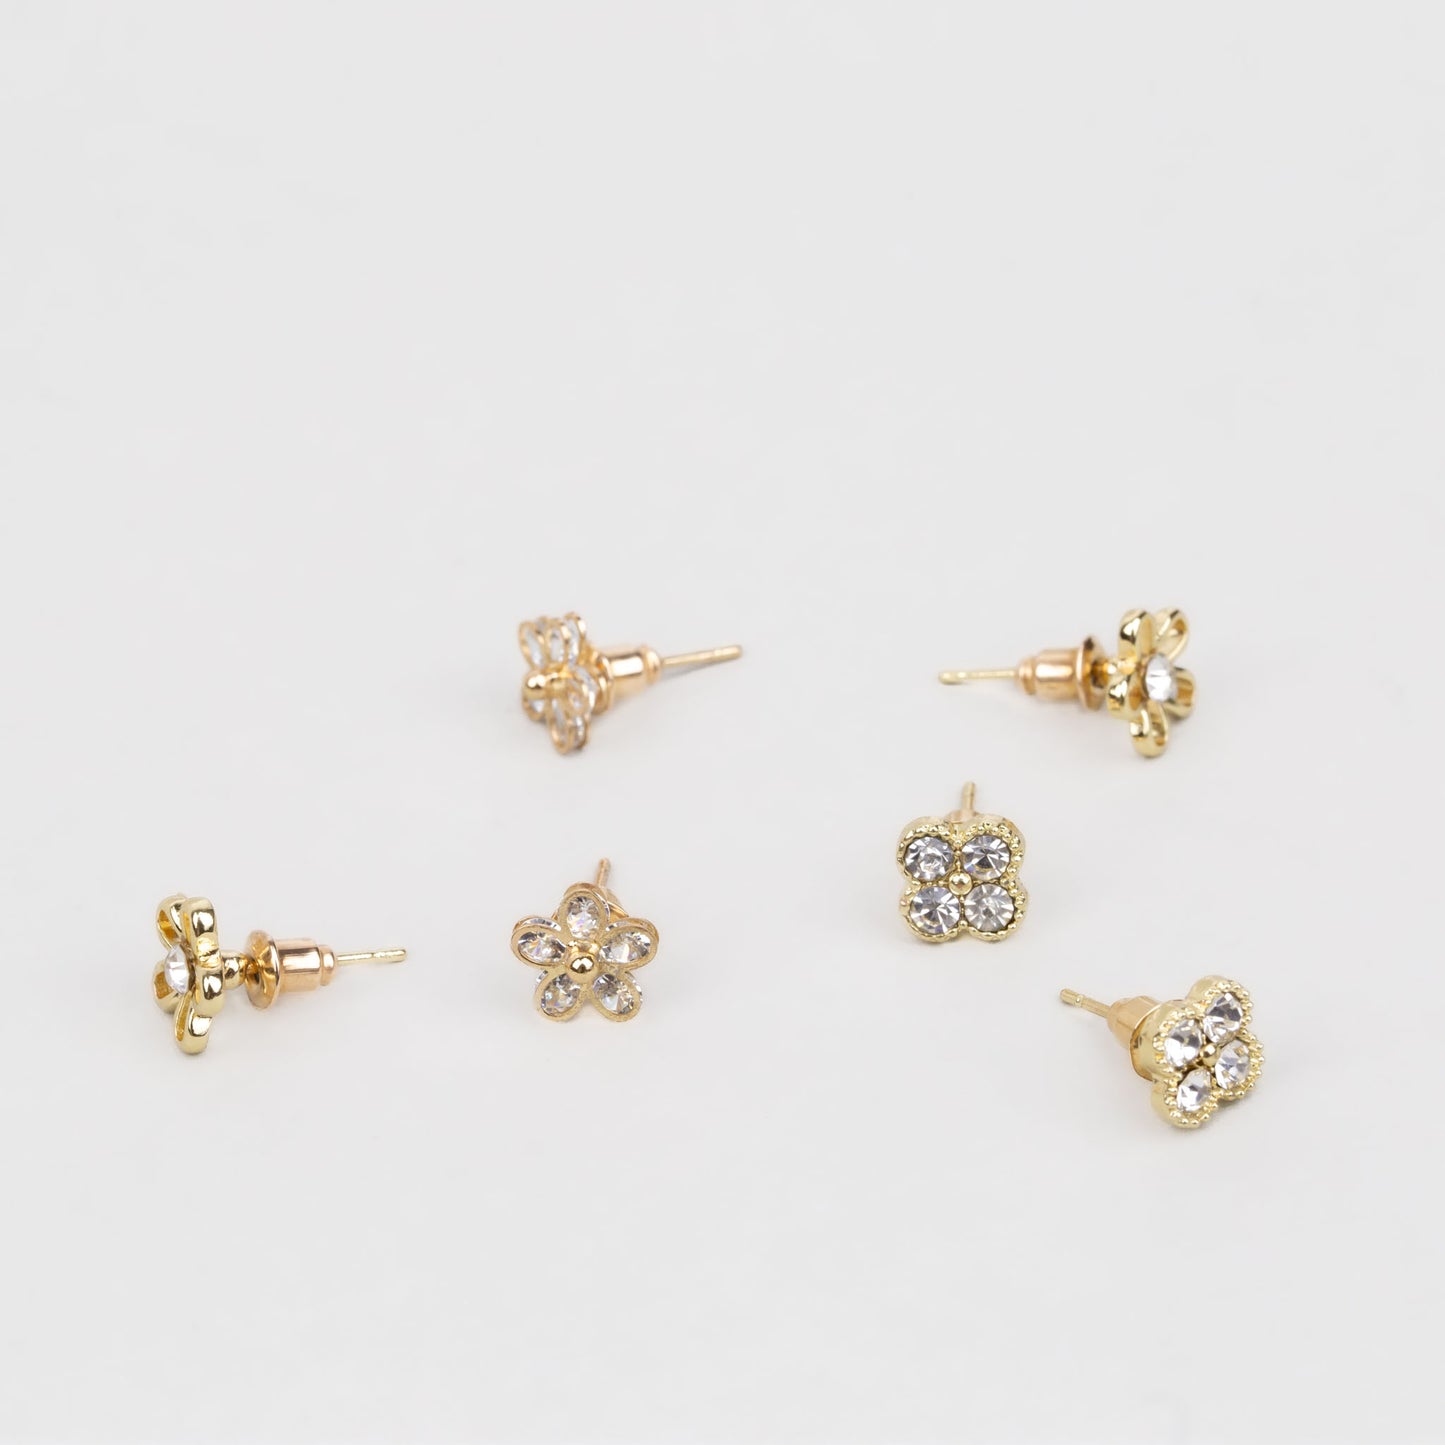 Cercei mici cu forme de flori delicate și pietre strălucitoare, set 3 perechi - Auriu